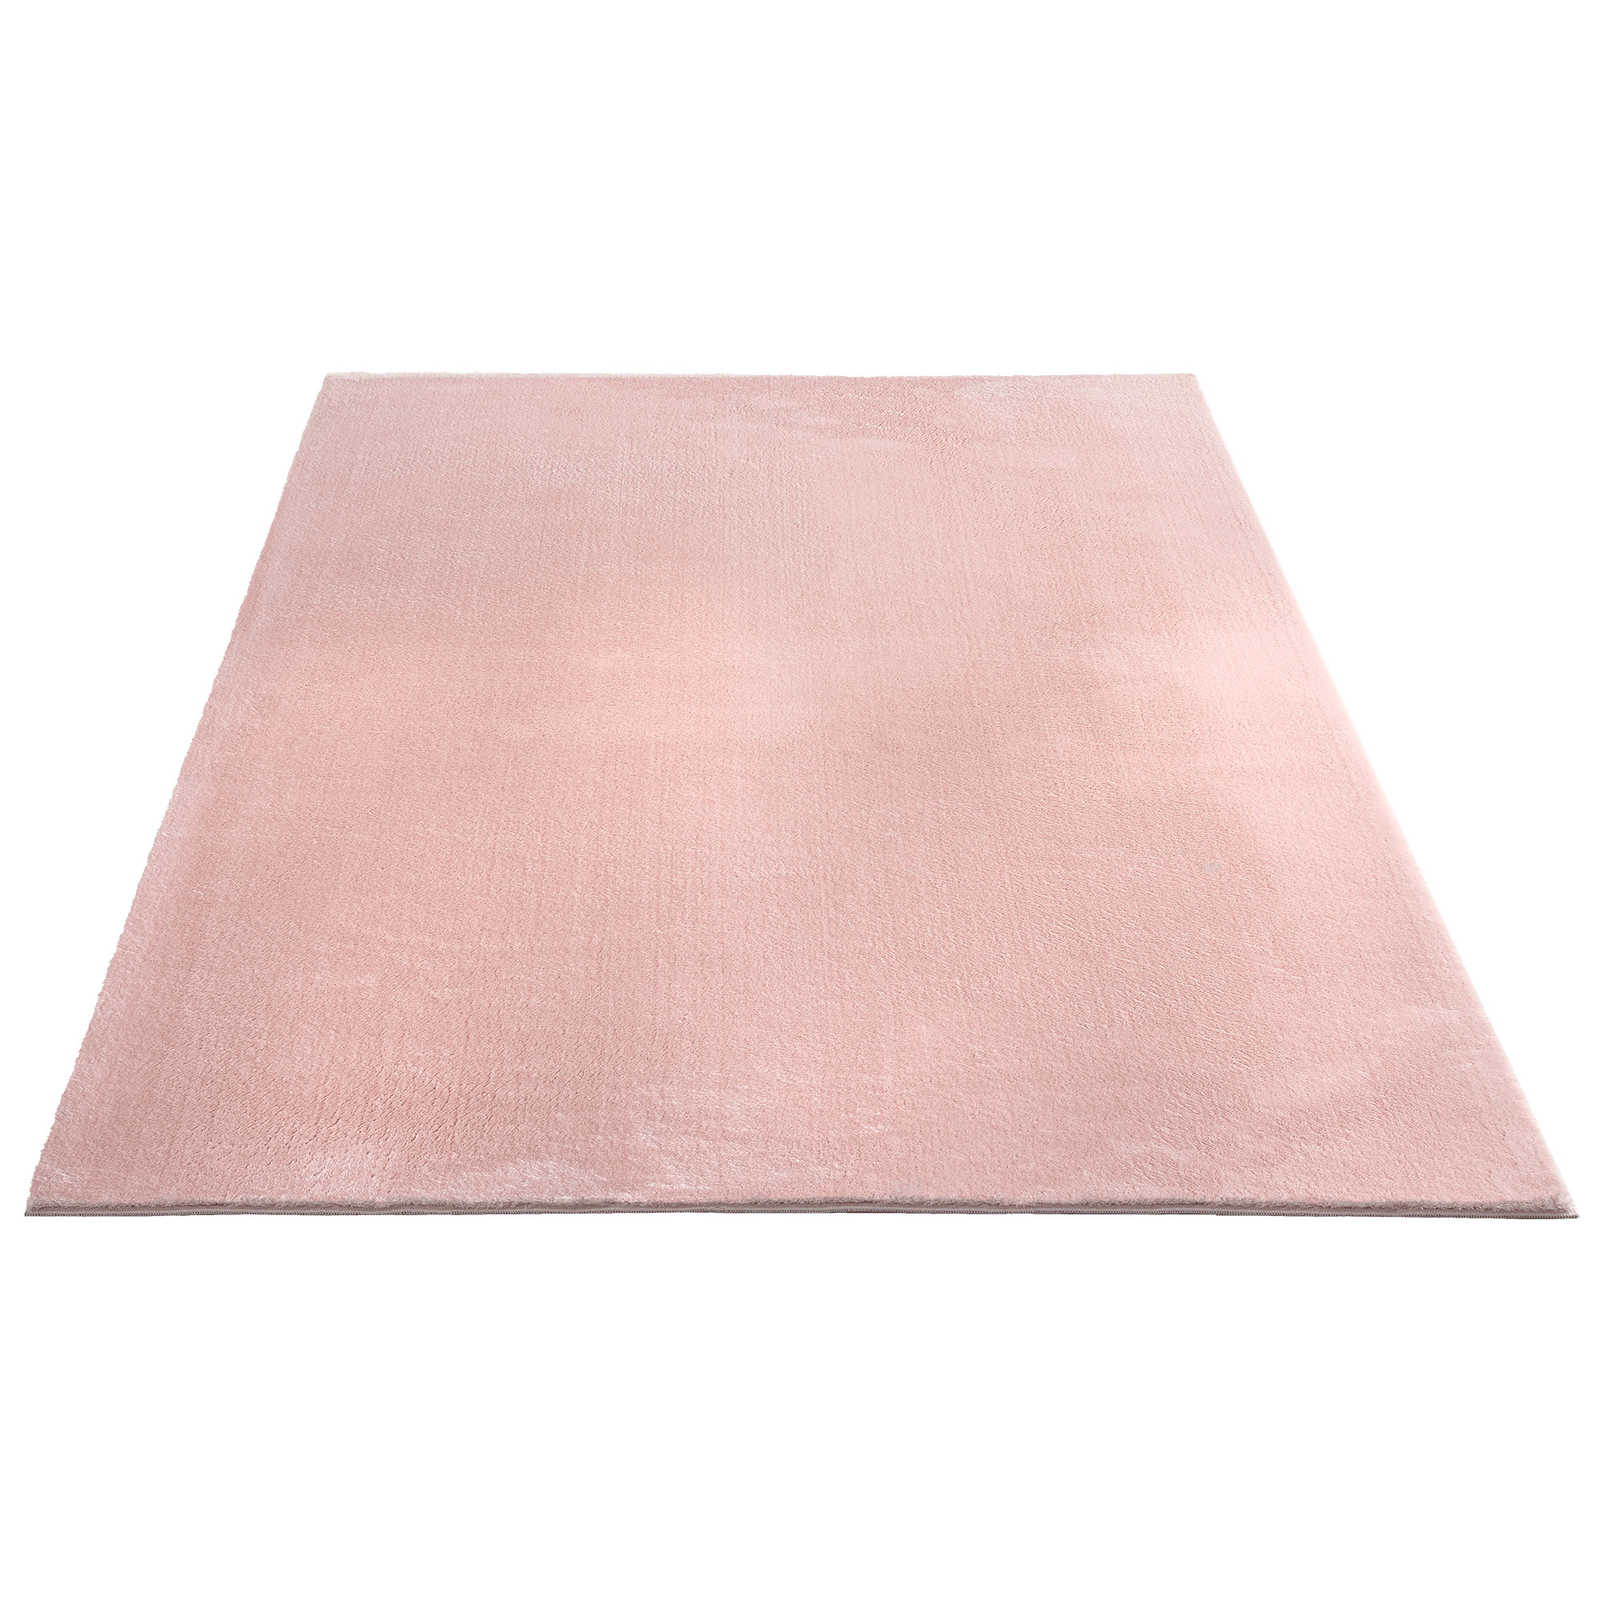 Fijnpolig tapijt in roze - 340 x 240 cm
